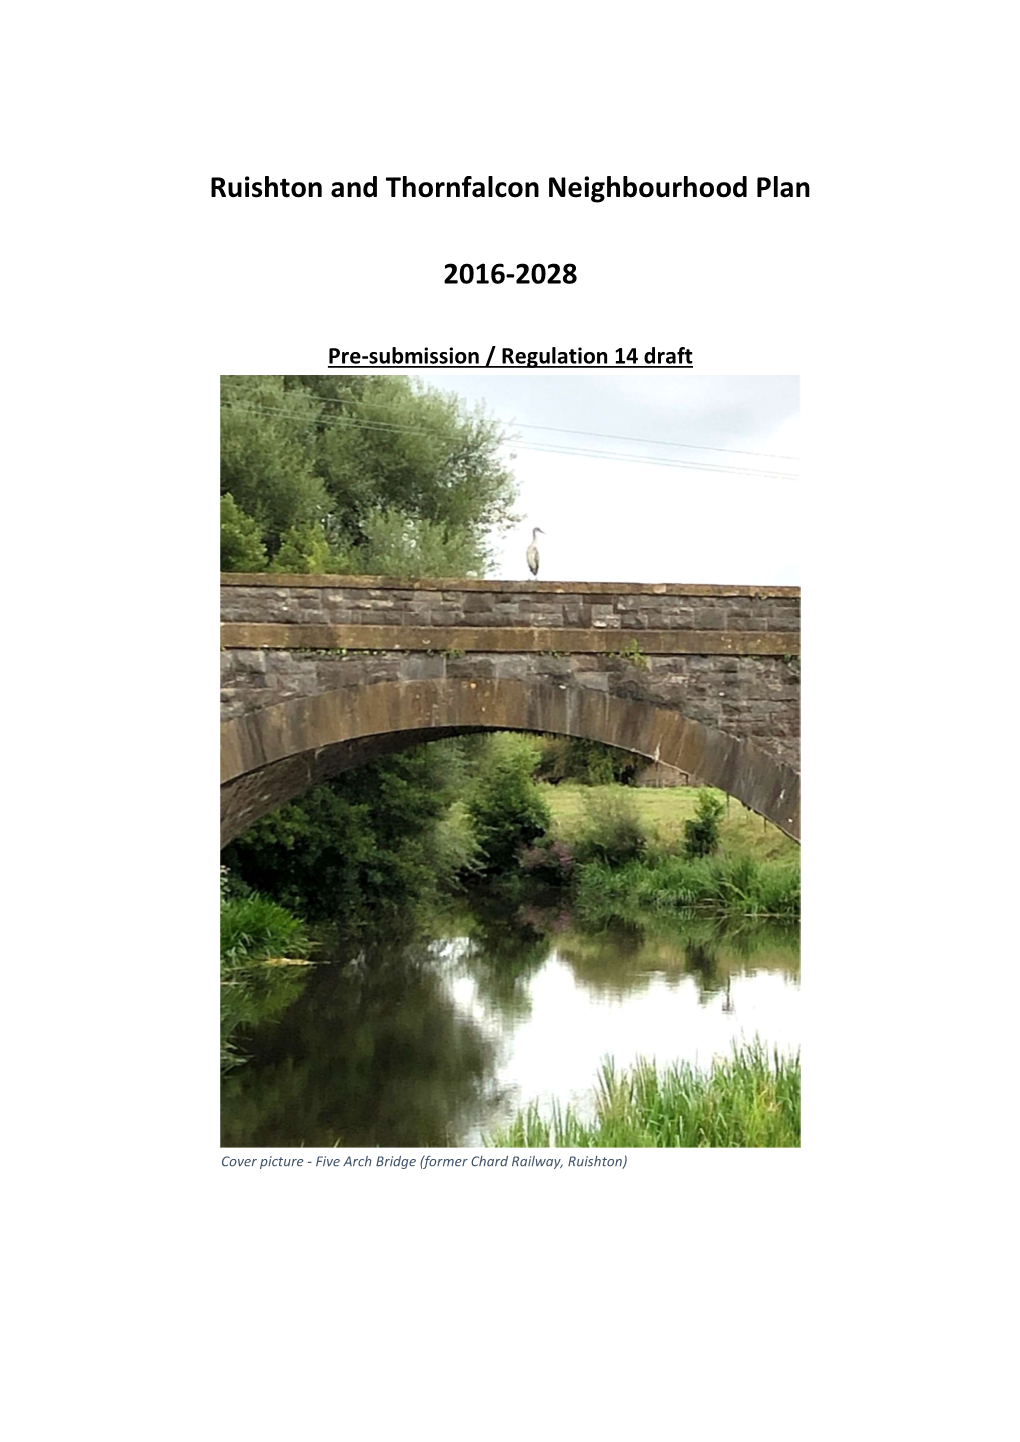 Ruishton and Thornfalcon Neighbourhood Plan 2016-2028